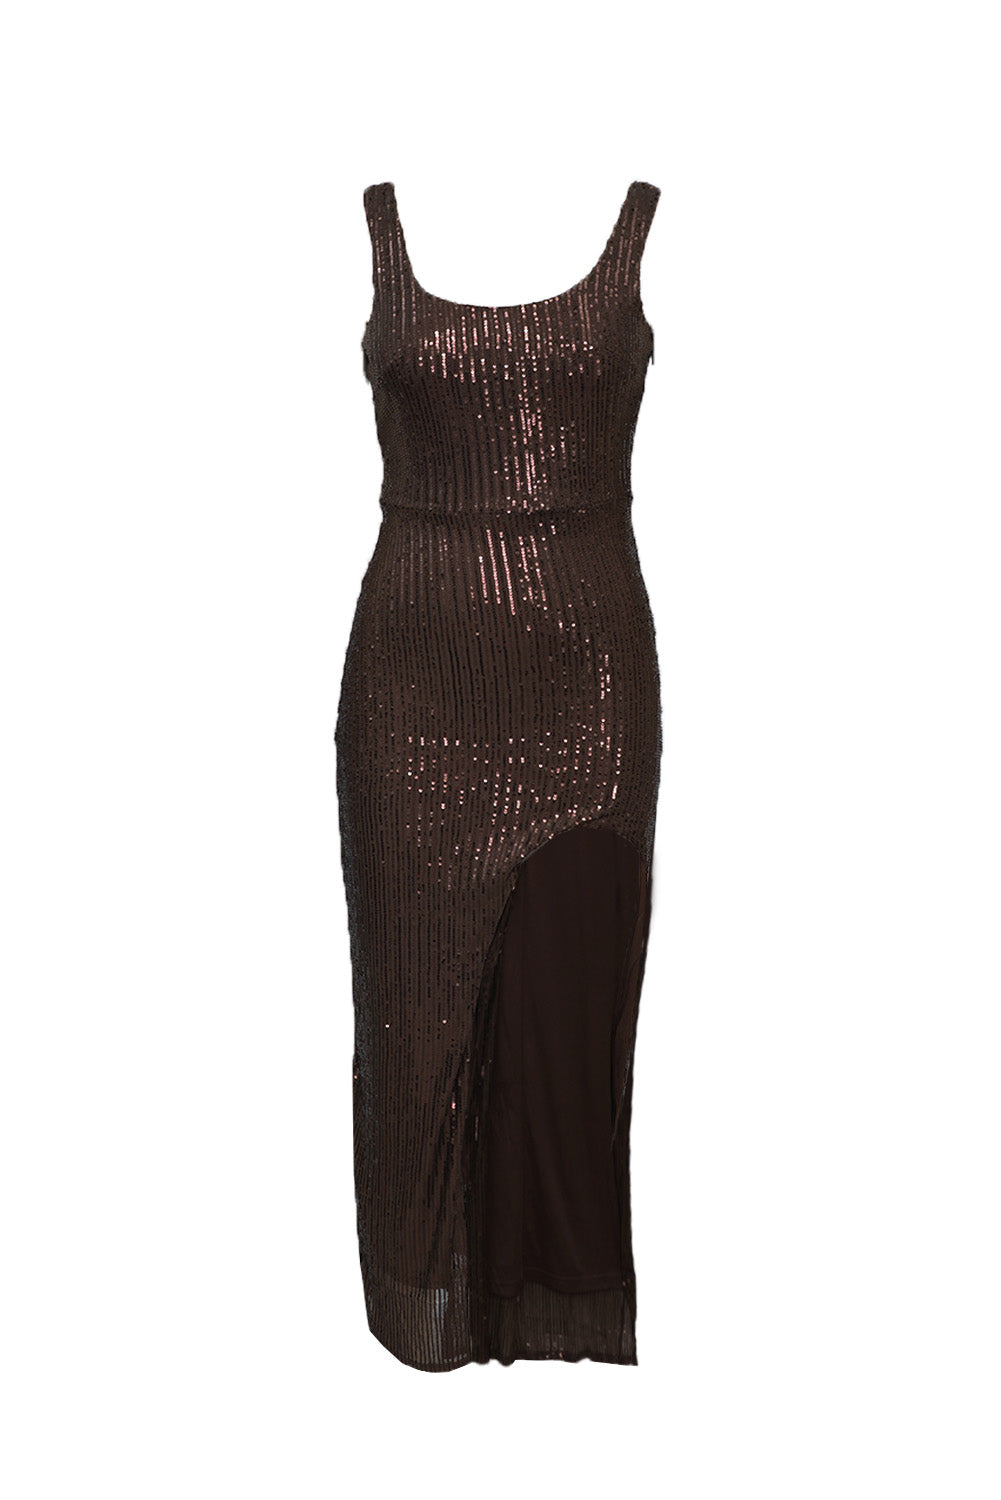 Brown Womens Sexy Dress Sleeveless High Split Sequin Maxi Dress LC617431-17